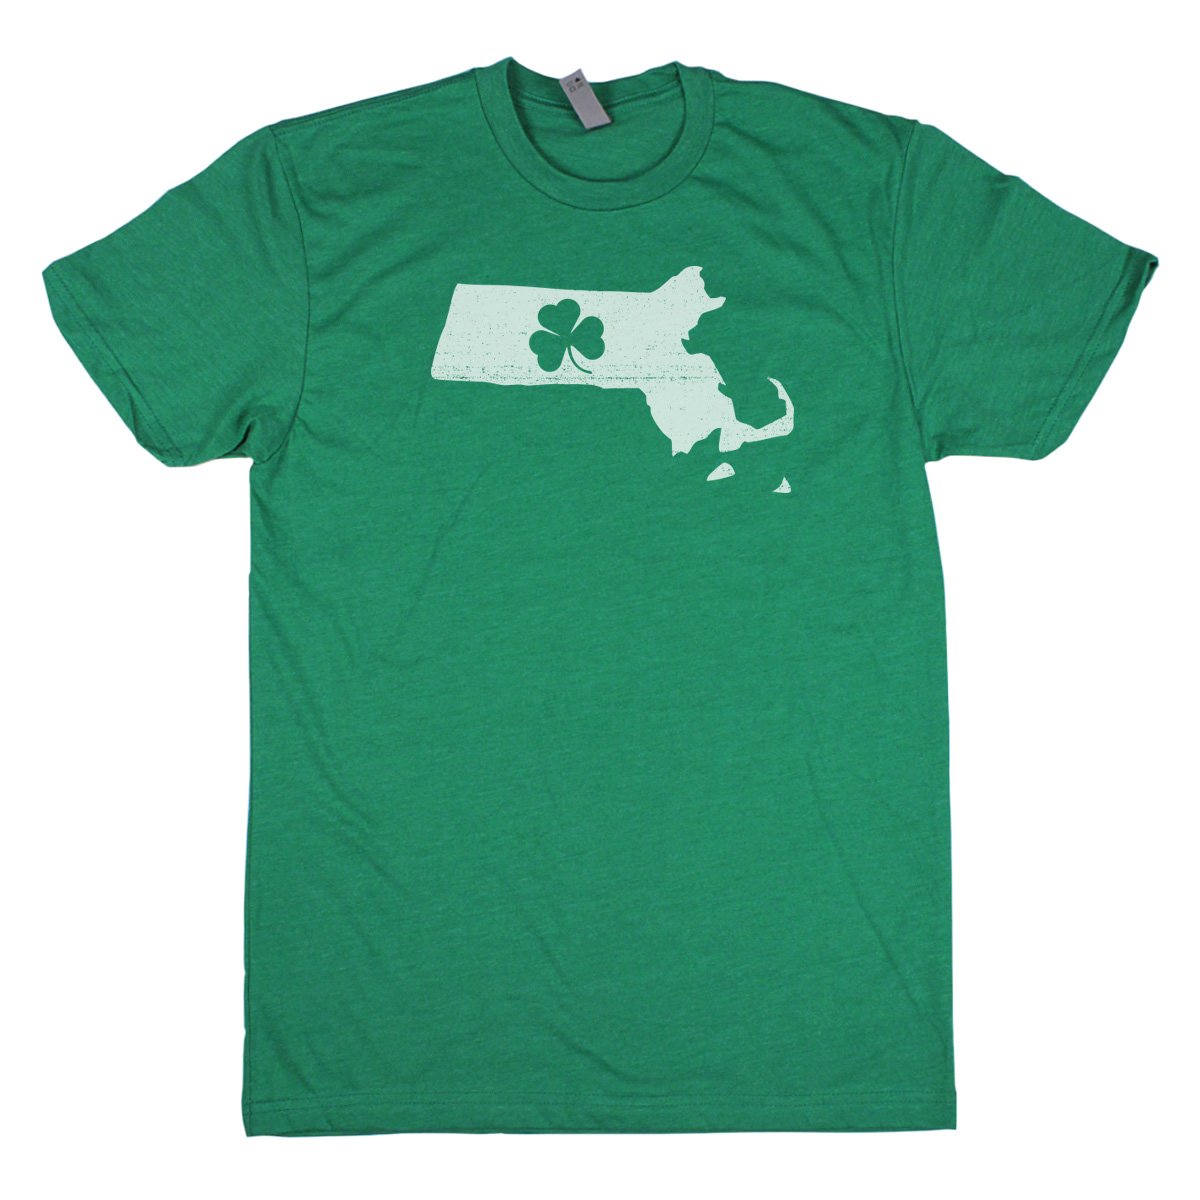 Shamrock Men's Unisex T-Shirt - Alabama